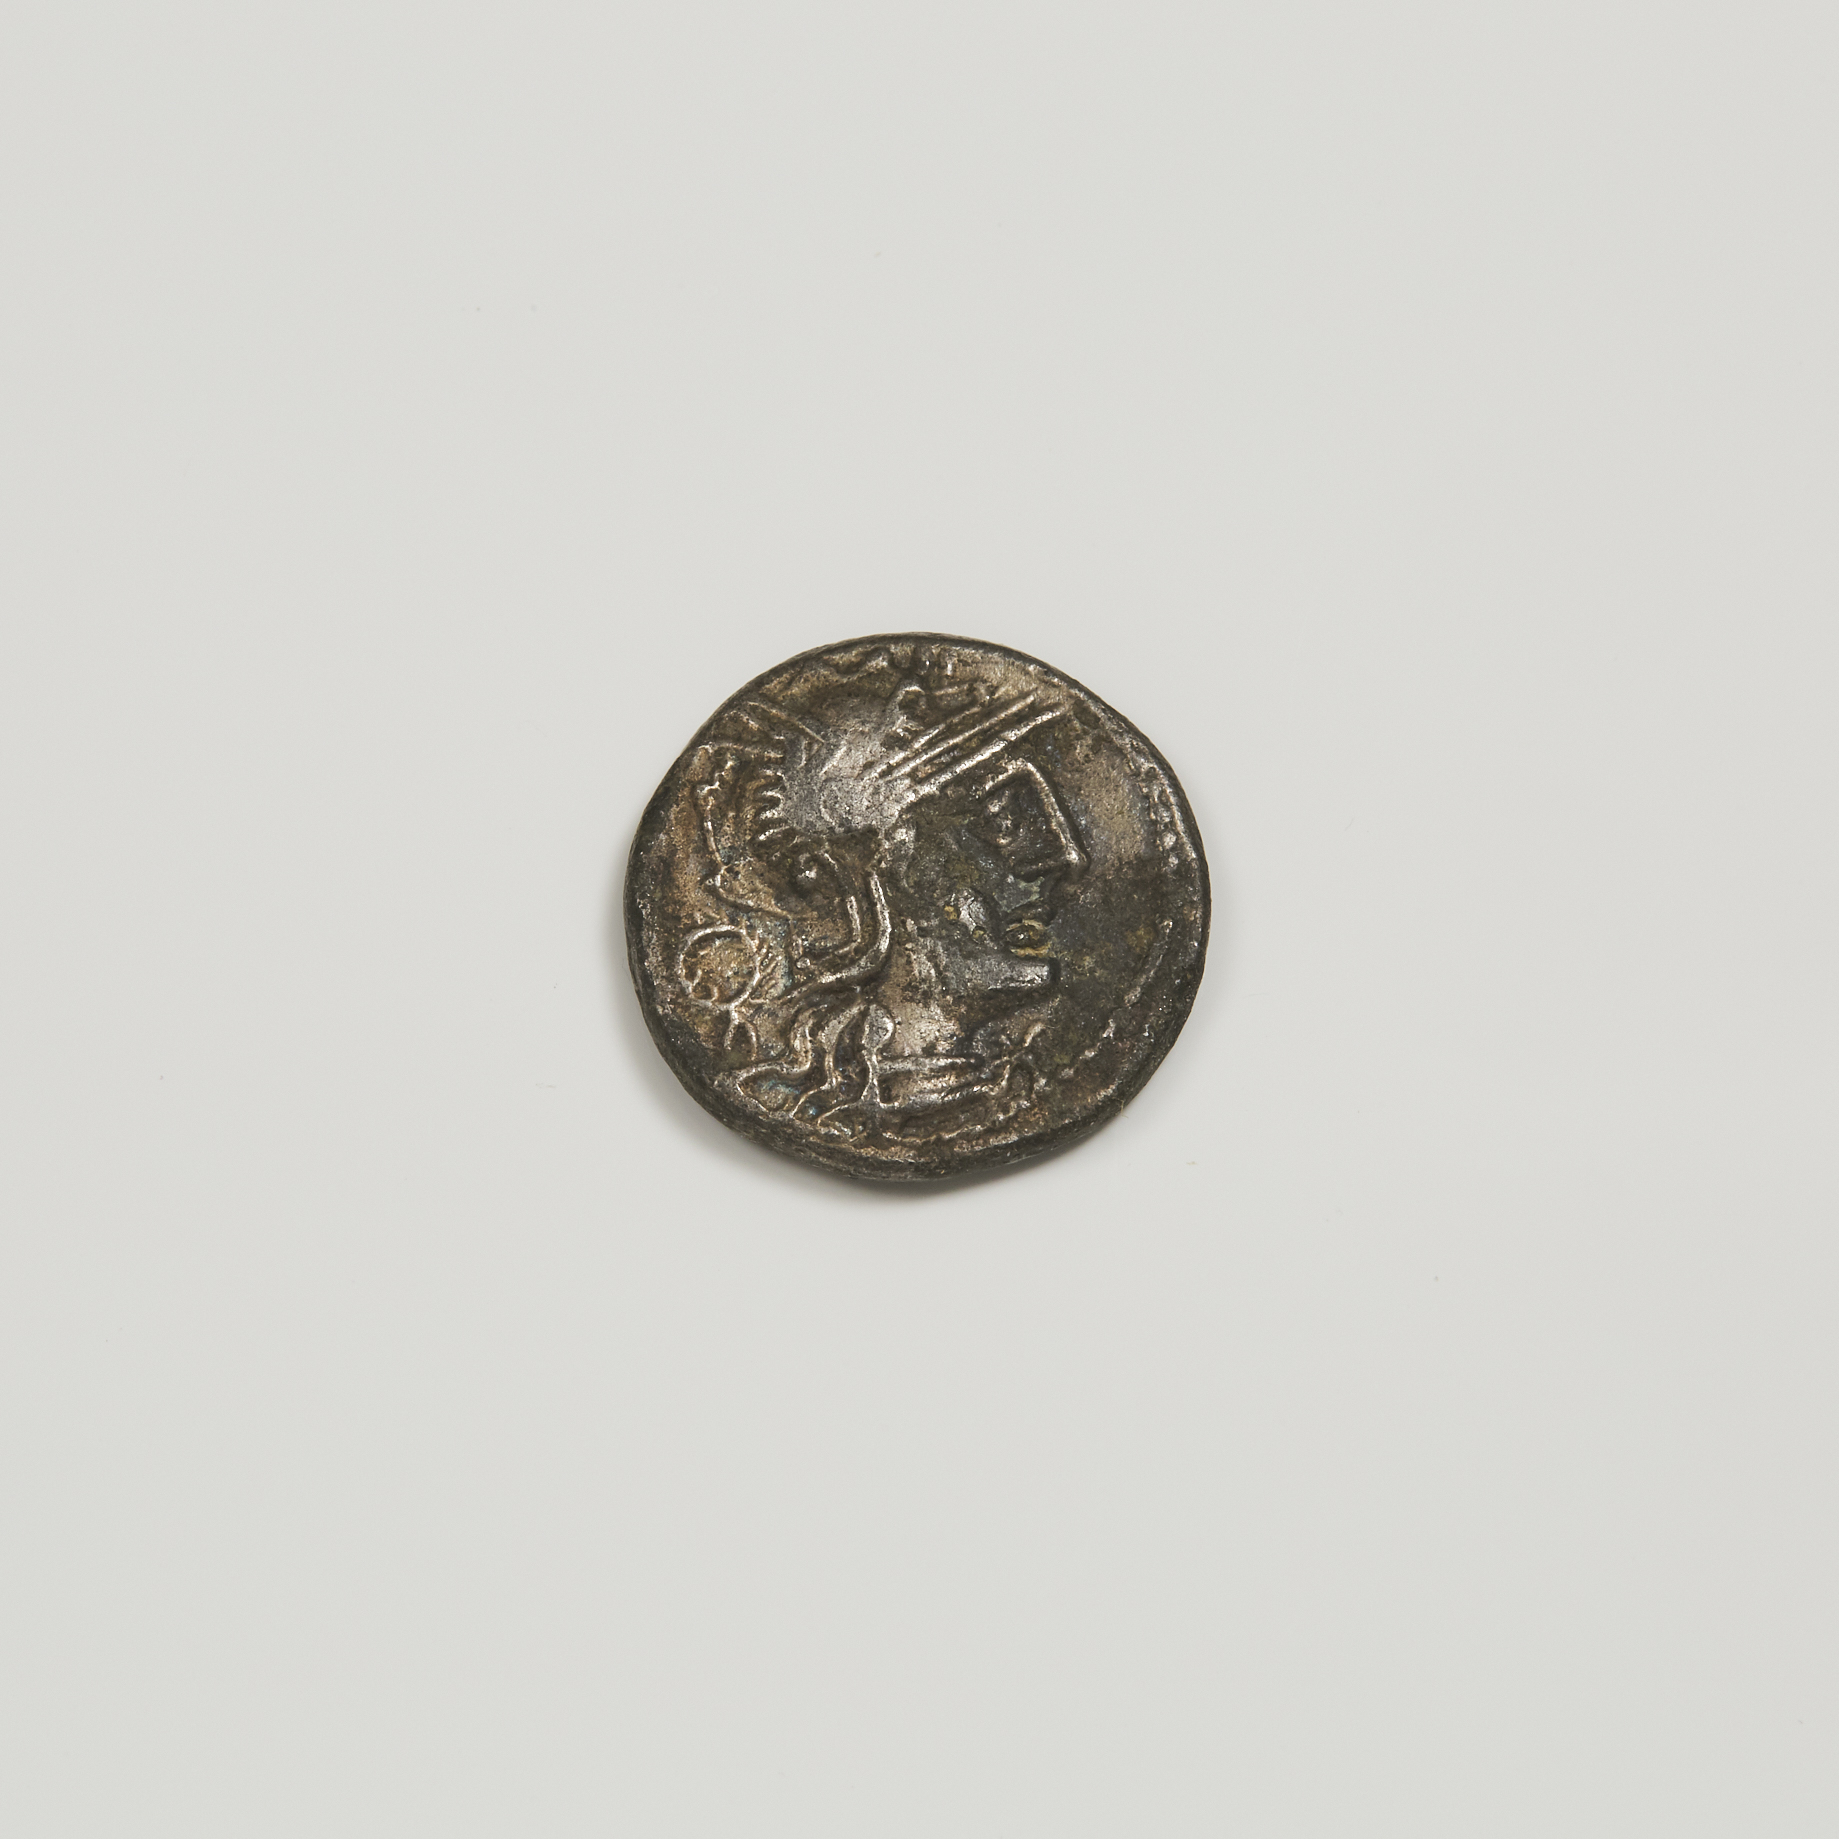 Ancient Coinage ROMAN LUCIUS OPEIMIUS 3abfa7